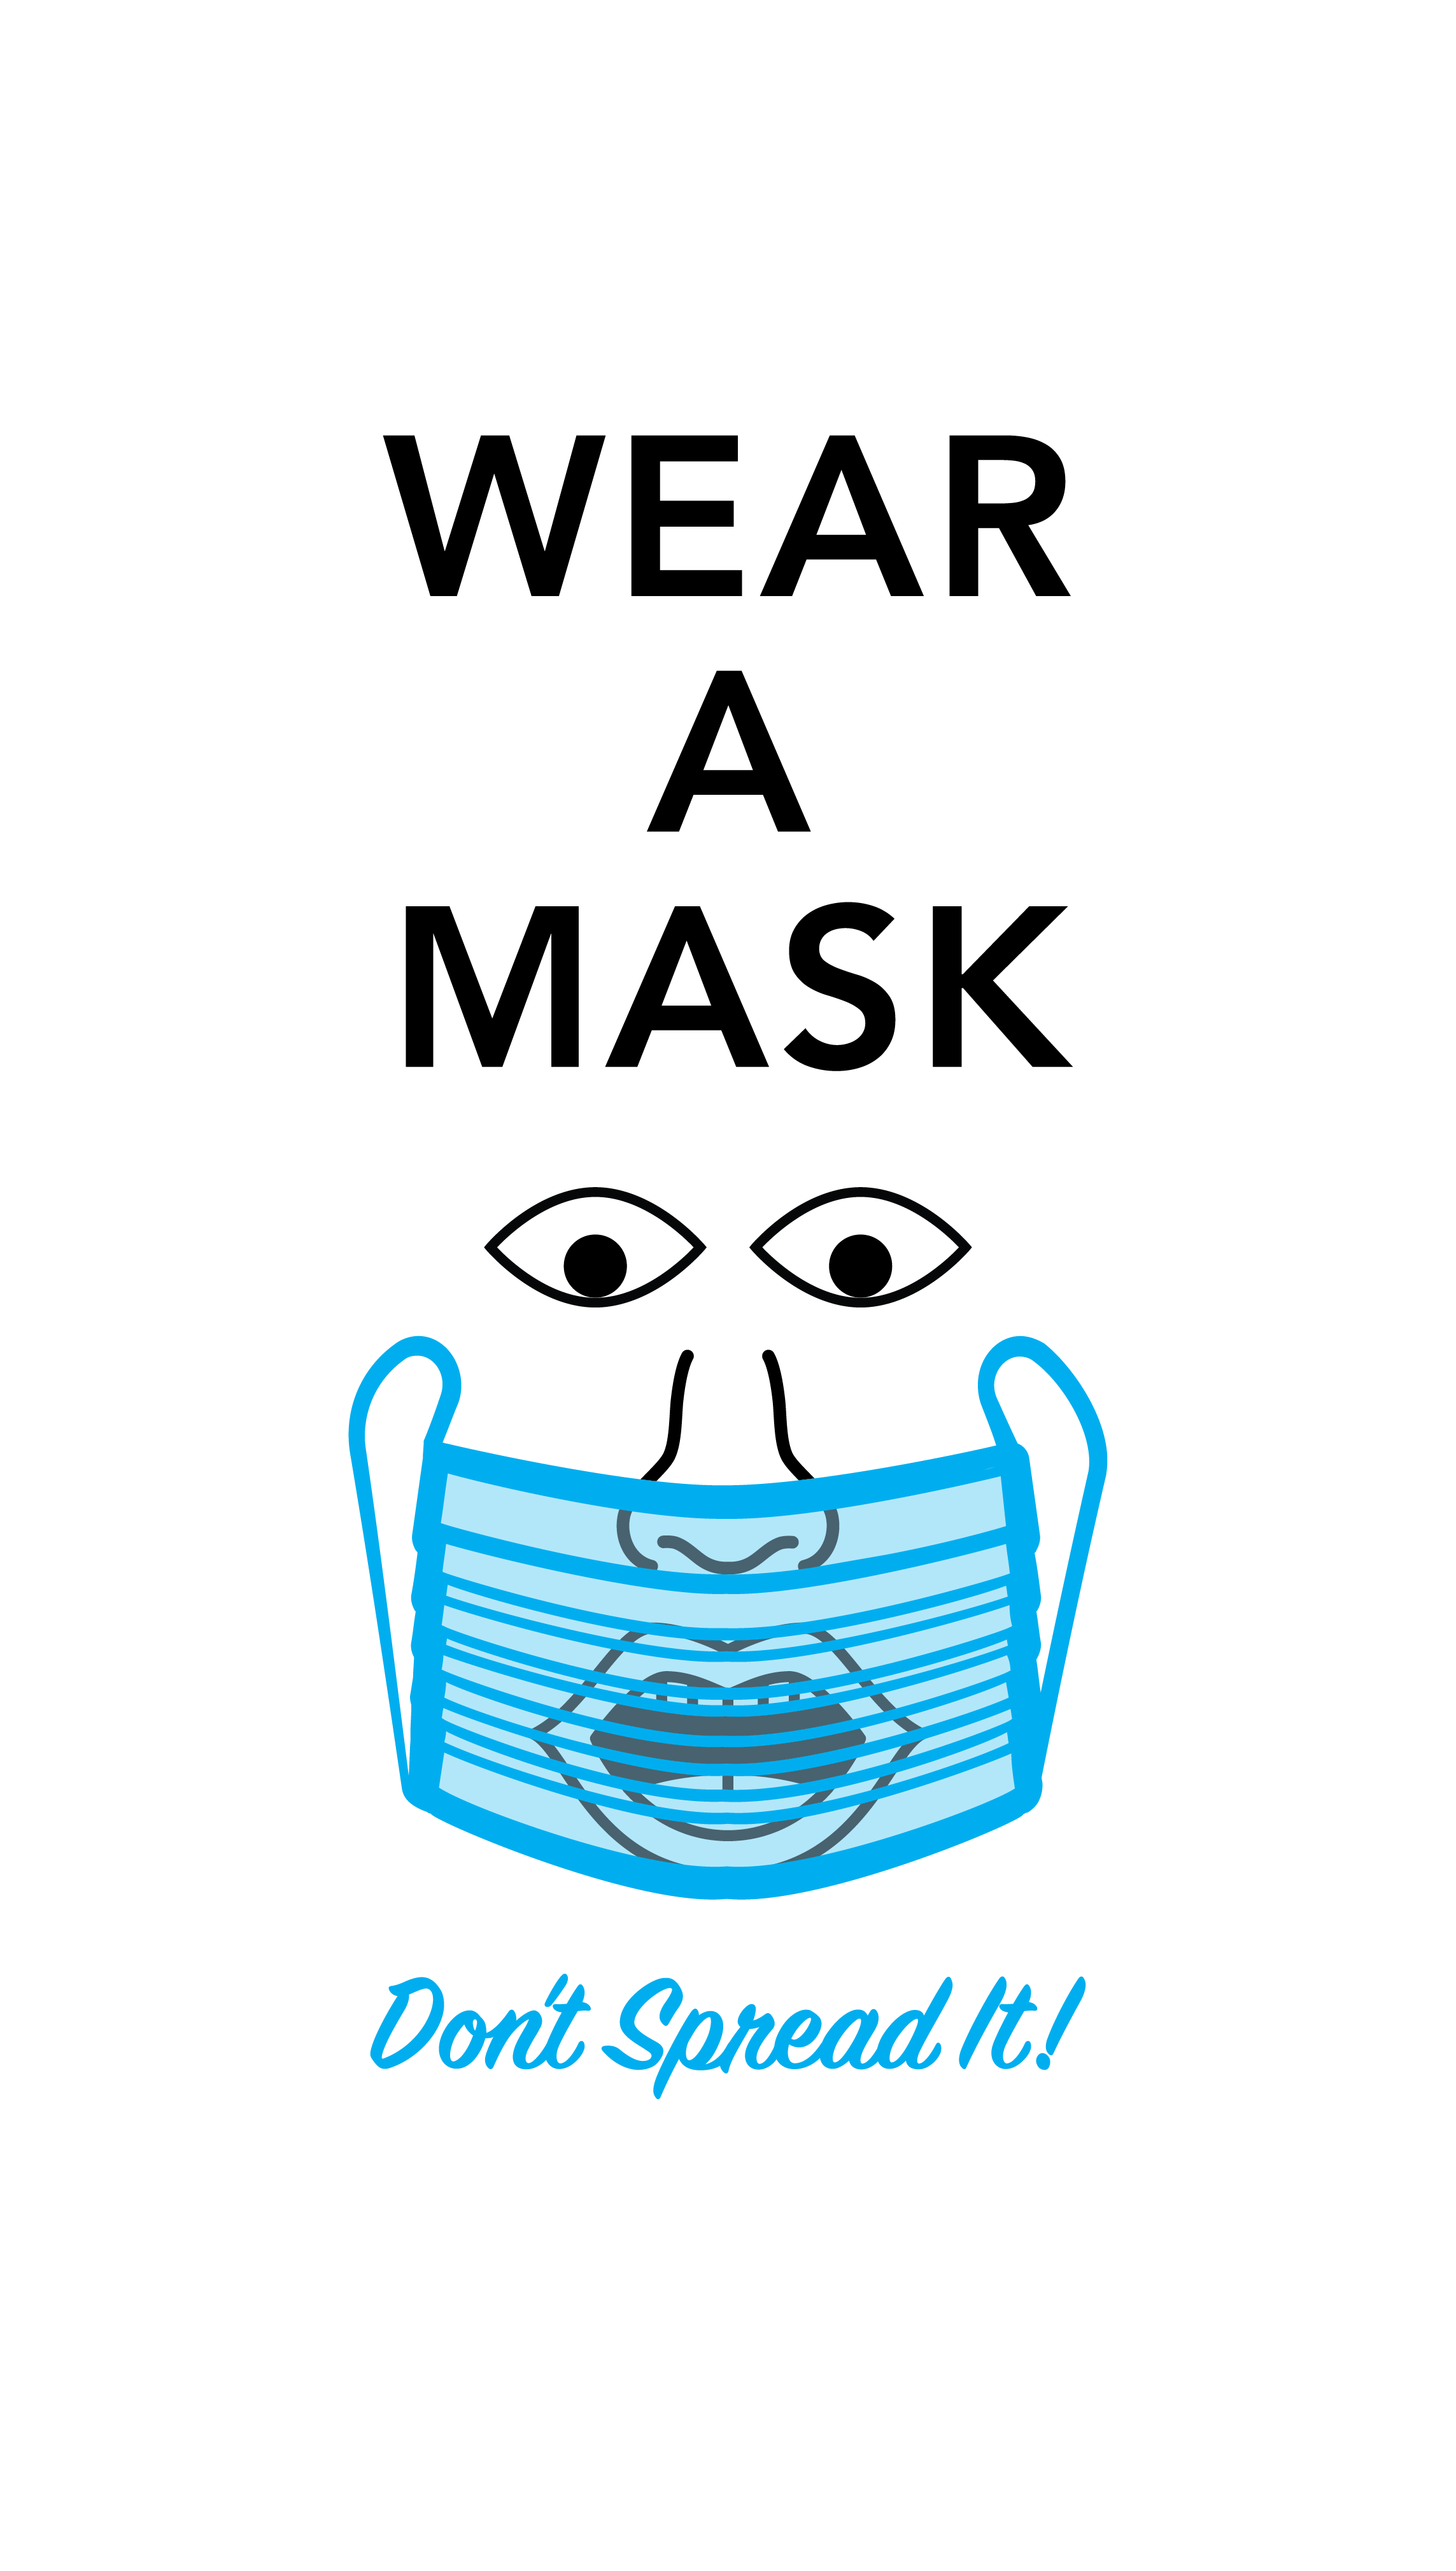 Wear a mask. Don't spread it!